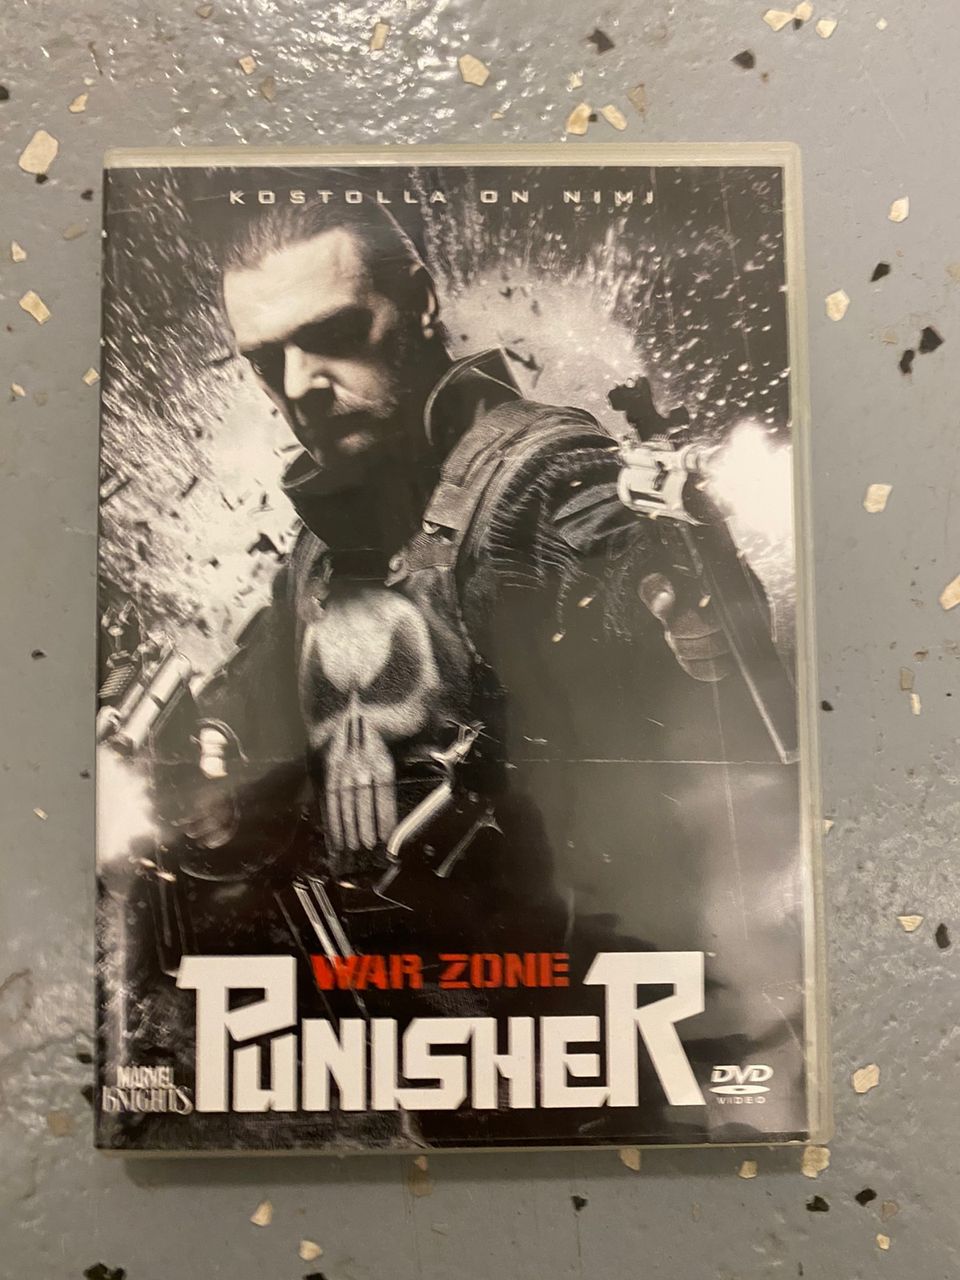 Punisher war zone dvd